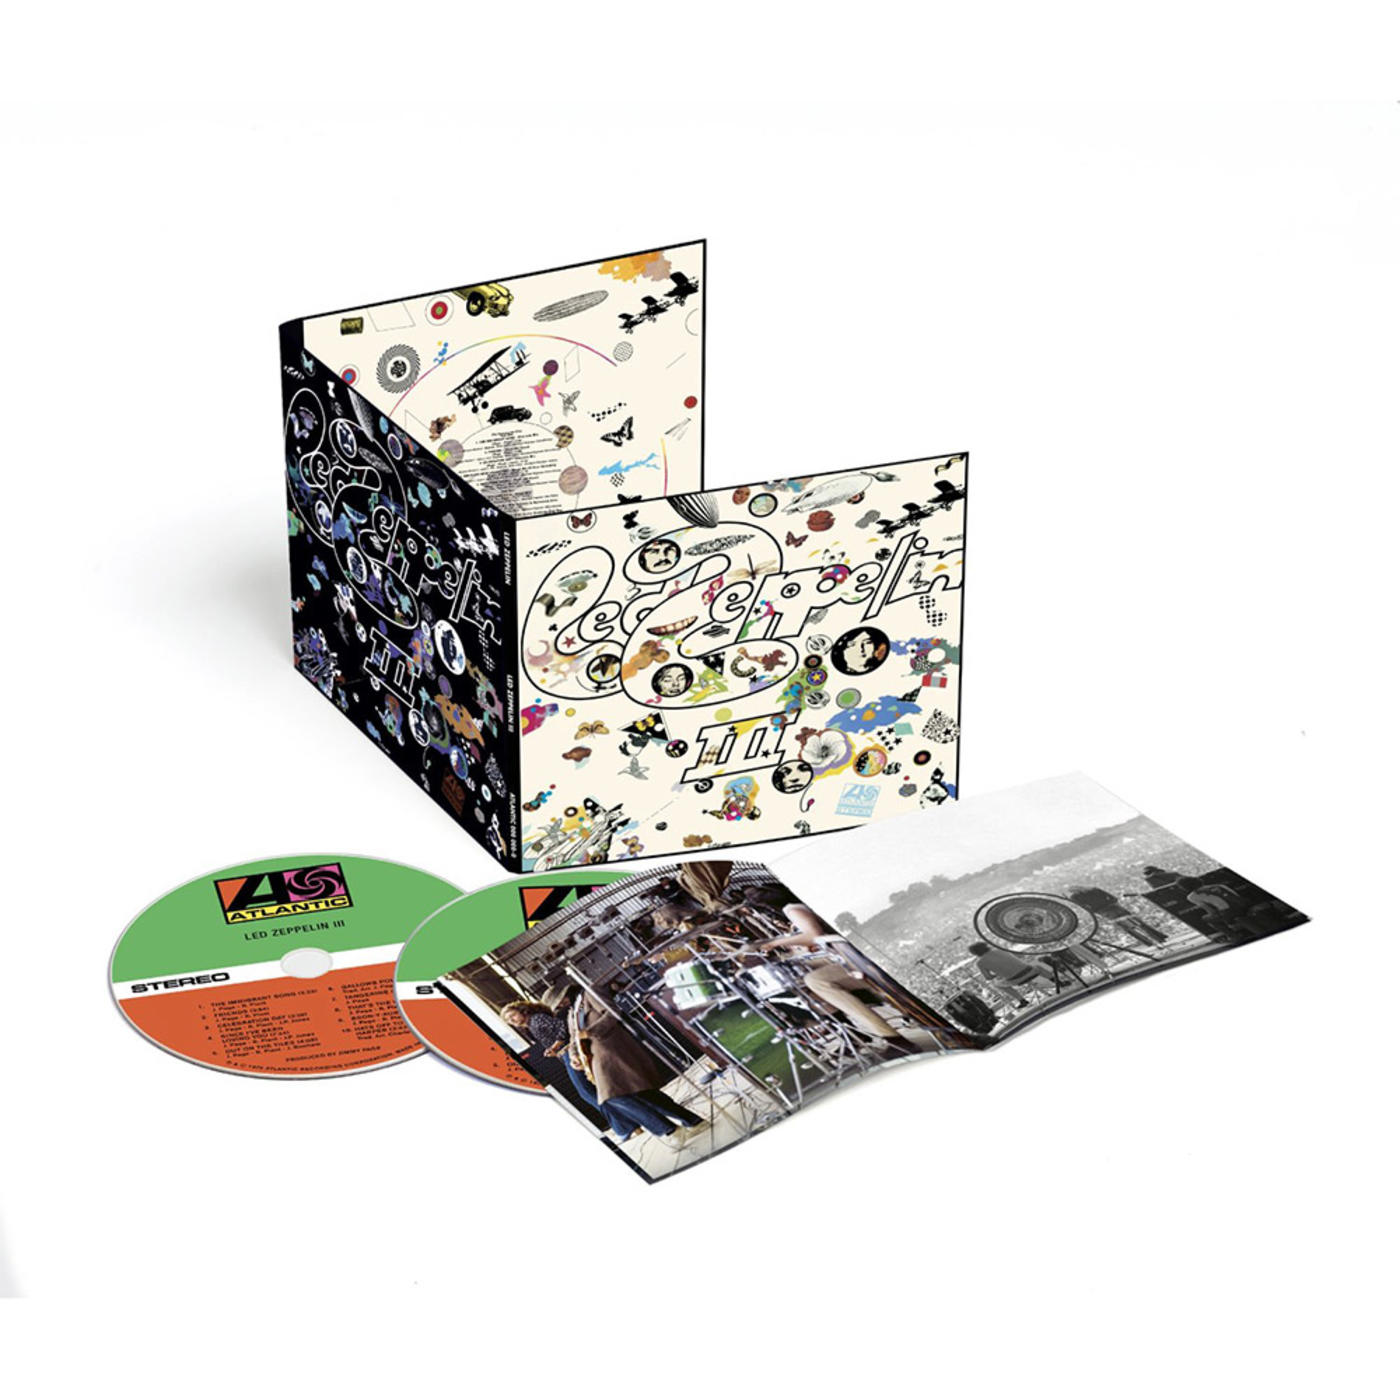 Led Zeppelin III - 2CD